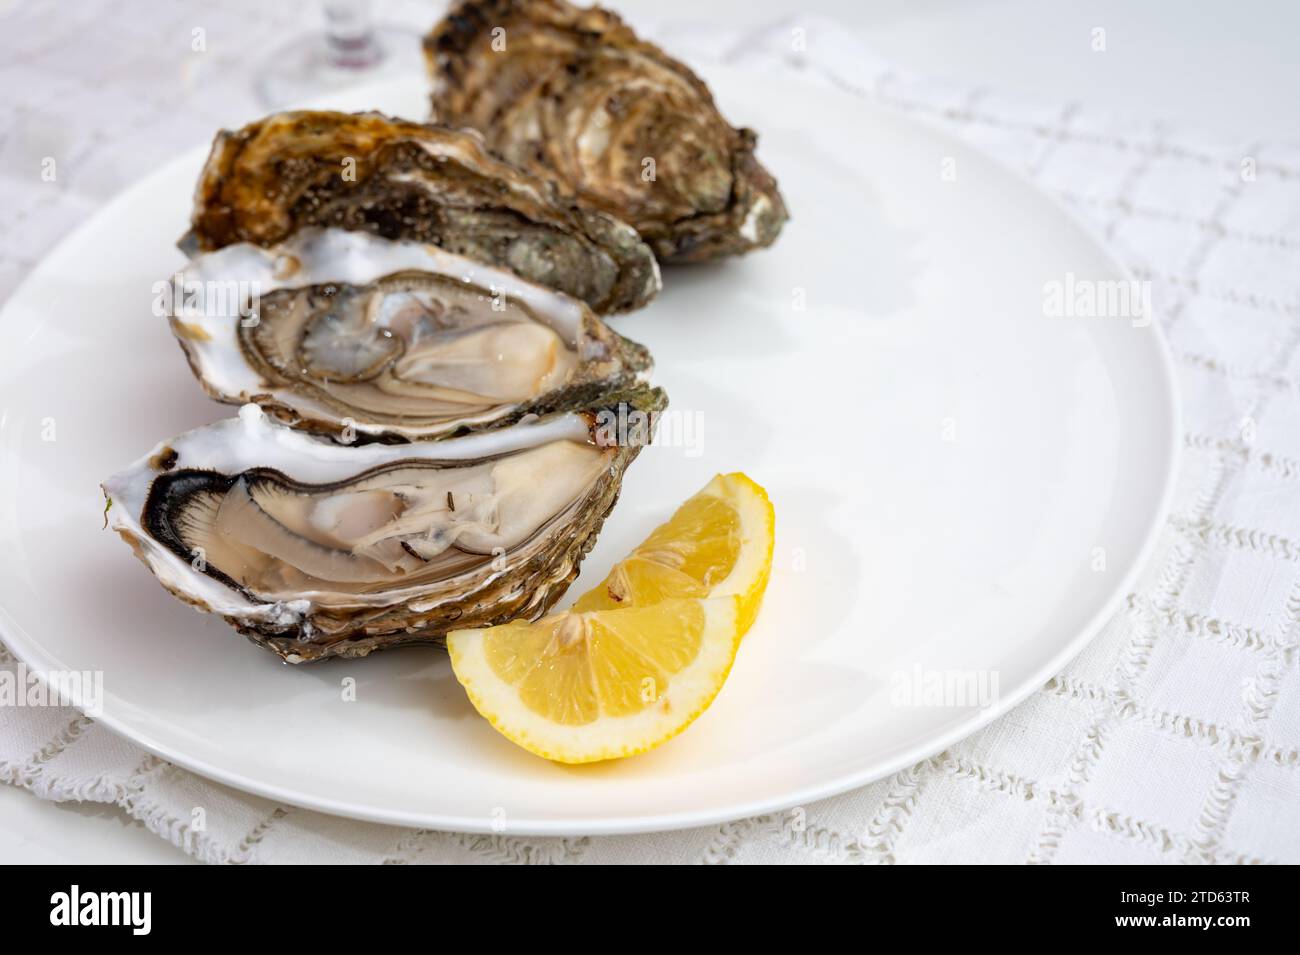 Molluschi di ostriche francesi, olandesi, del pacifico o giapponesi, taglia 1, serviti con limone fresco e pesce crudo Foto Stock